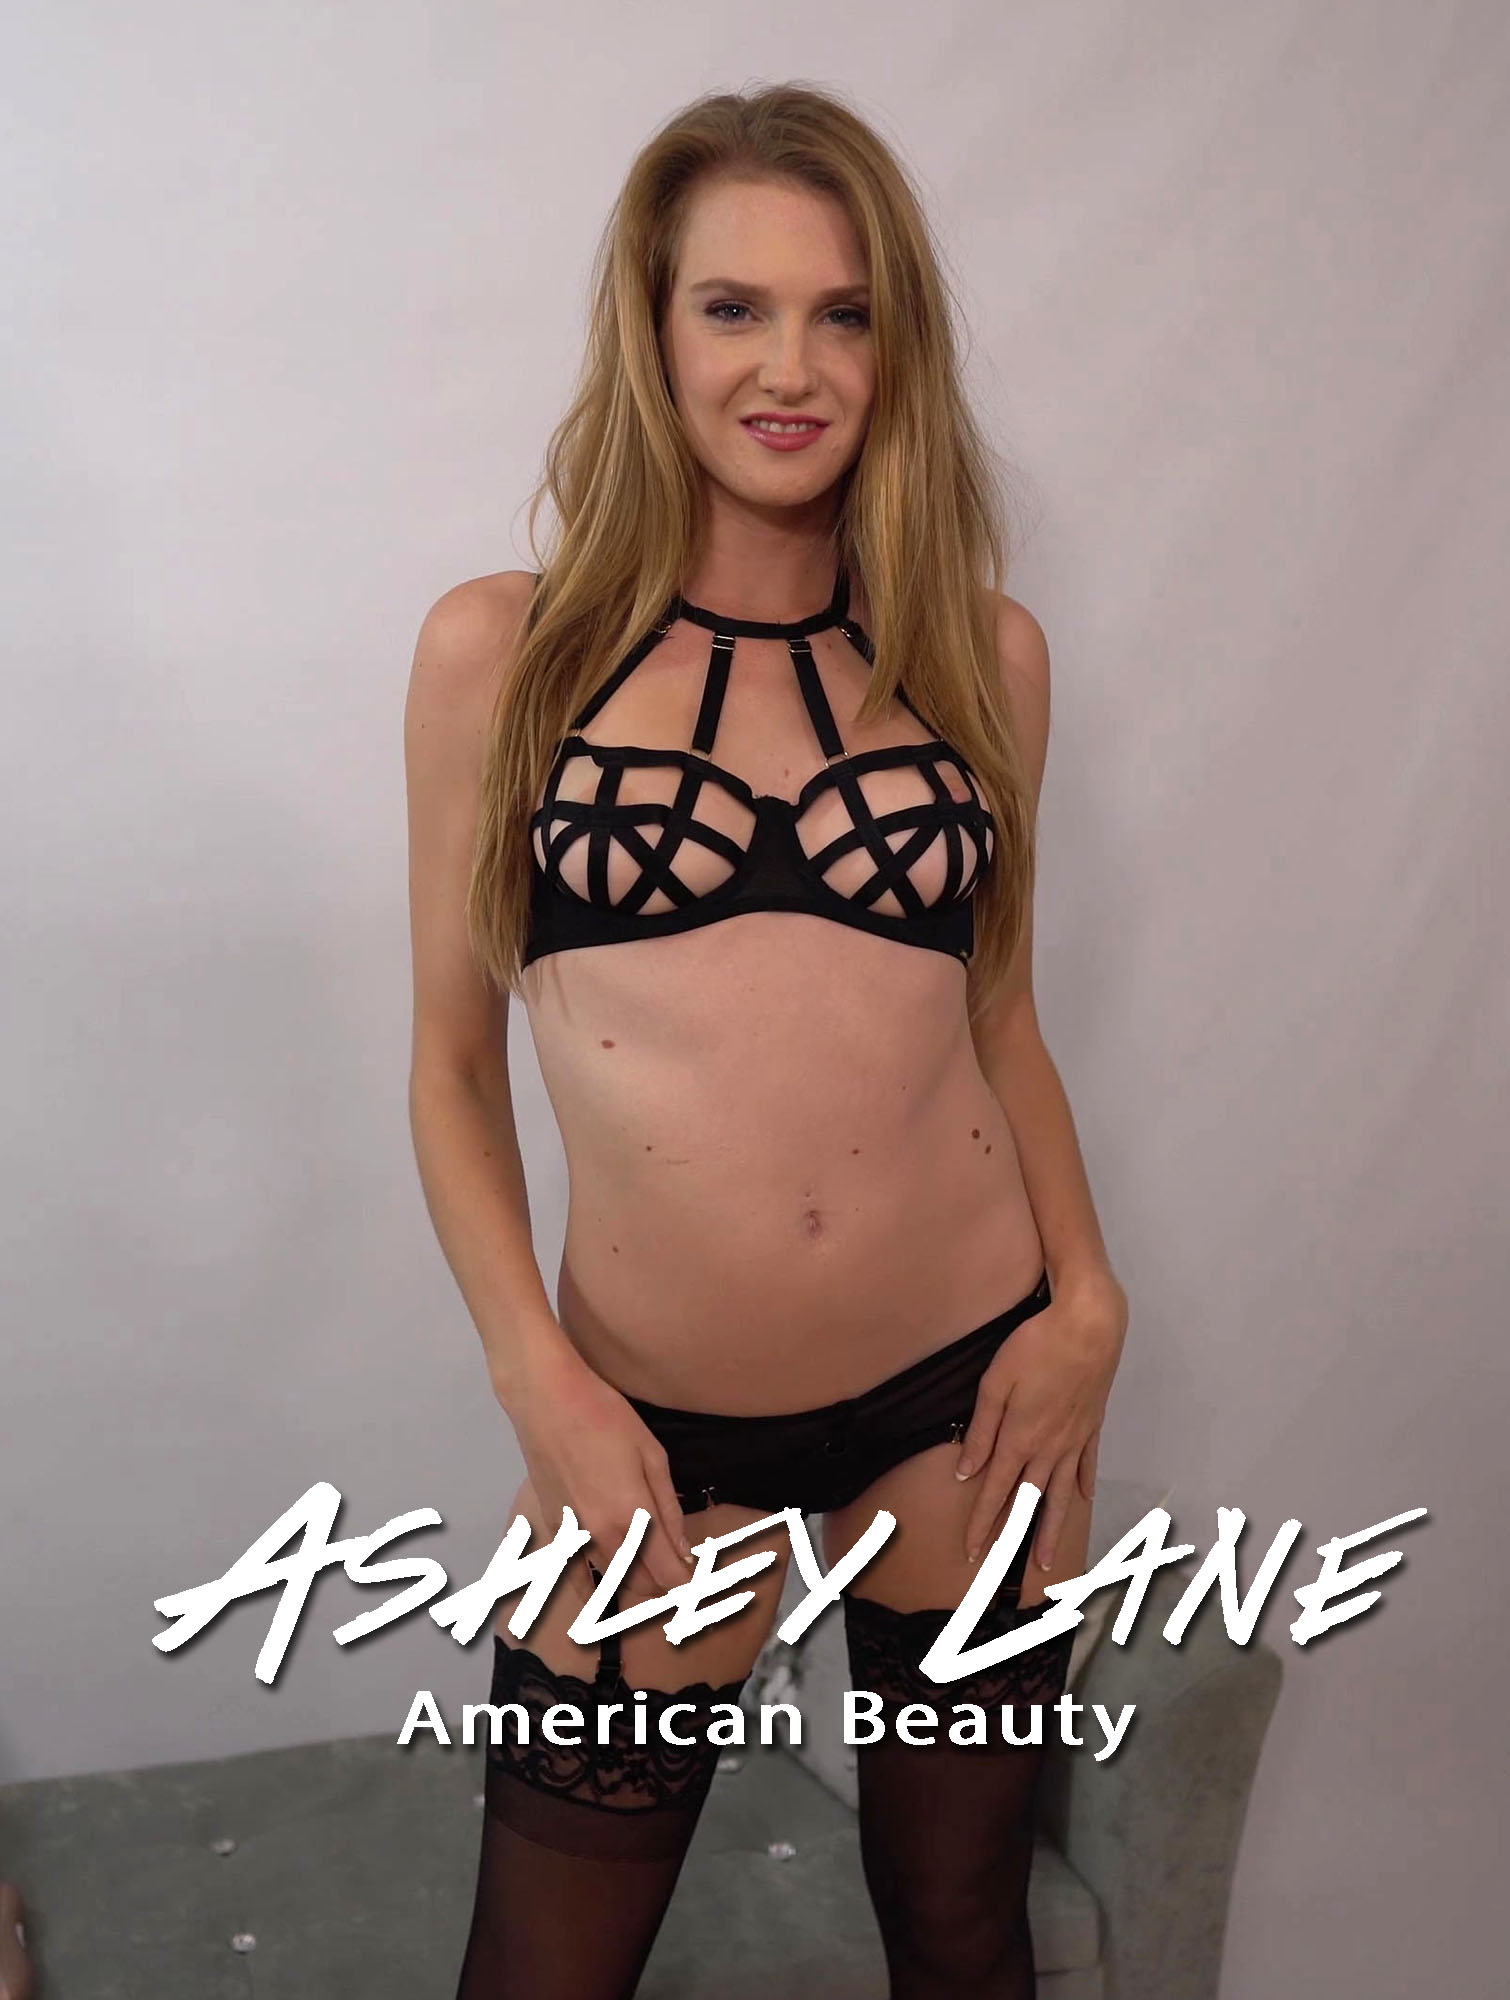 Ashley Lane